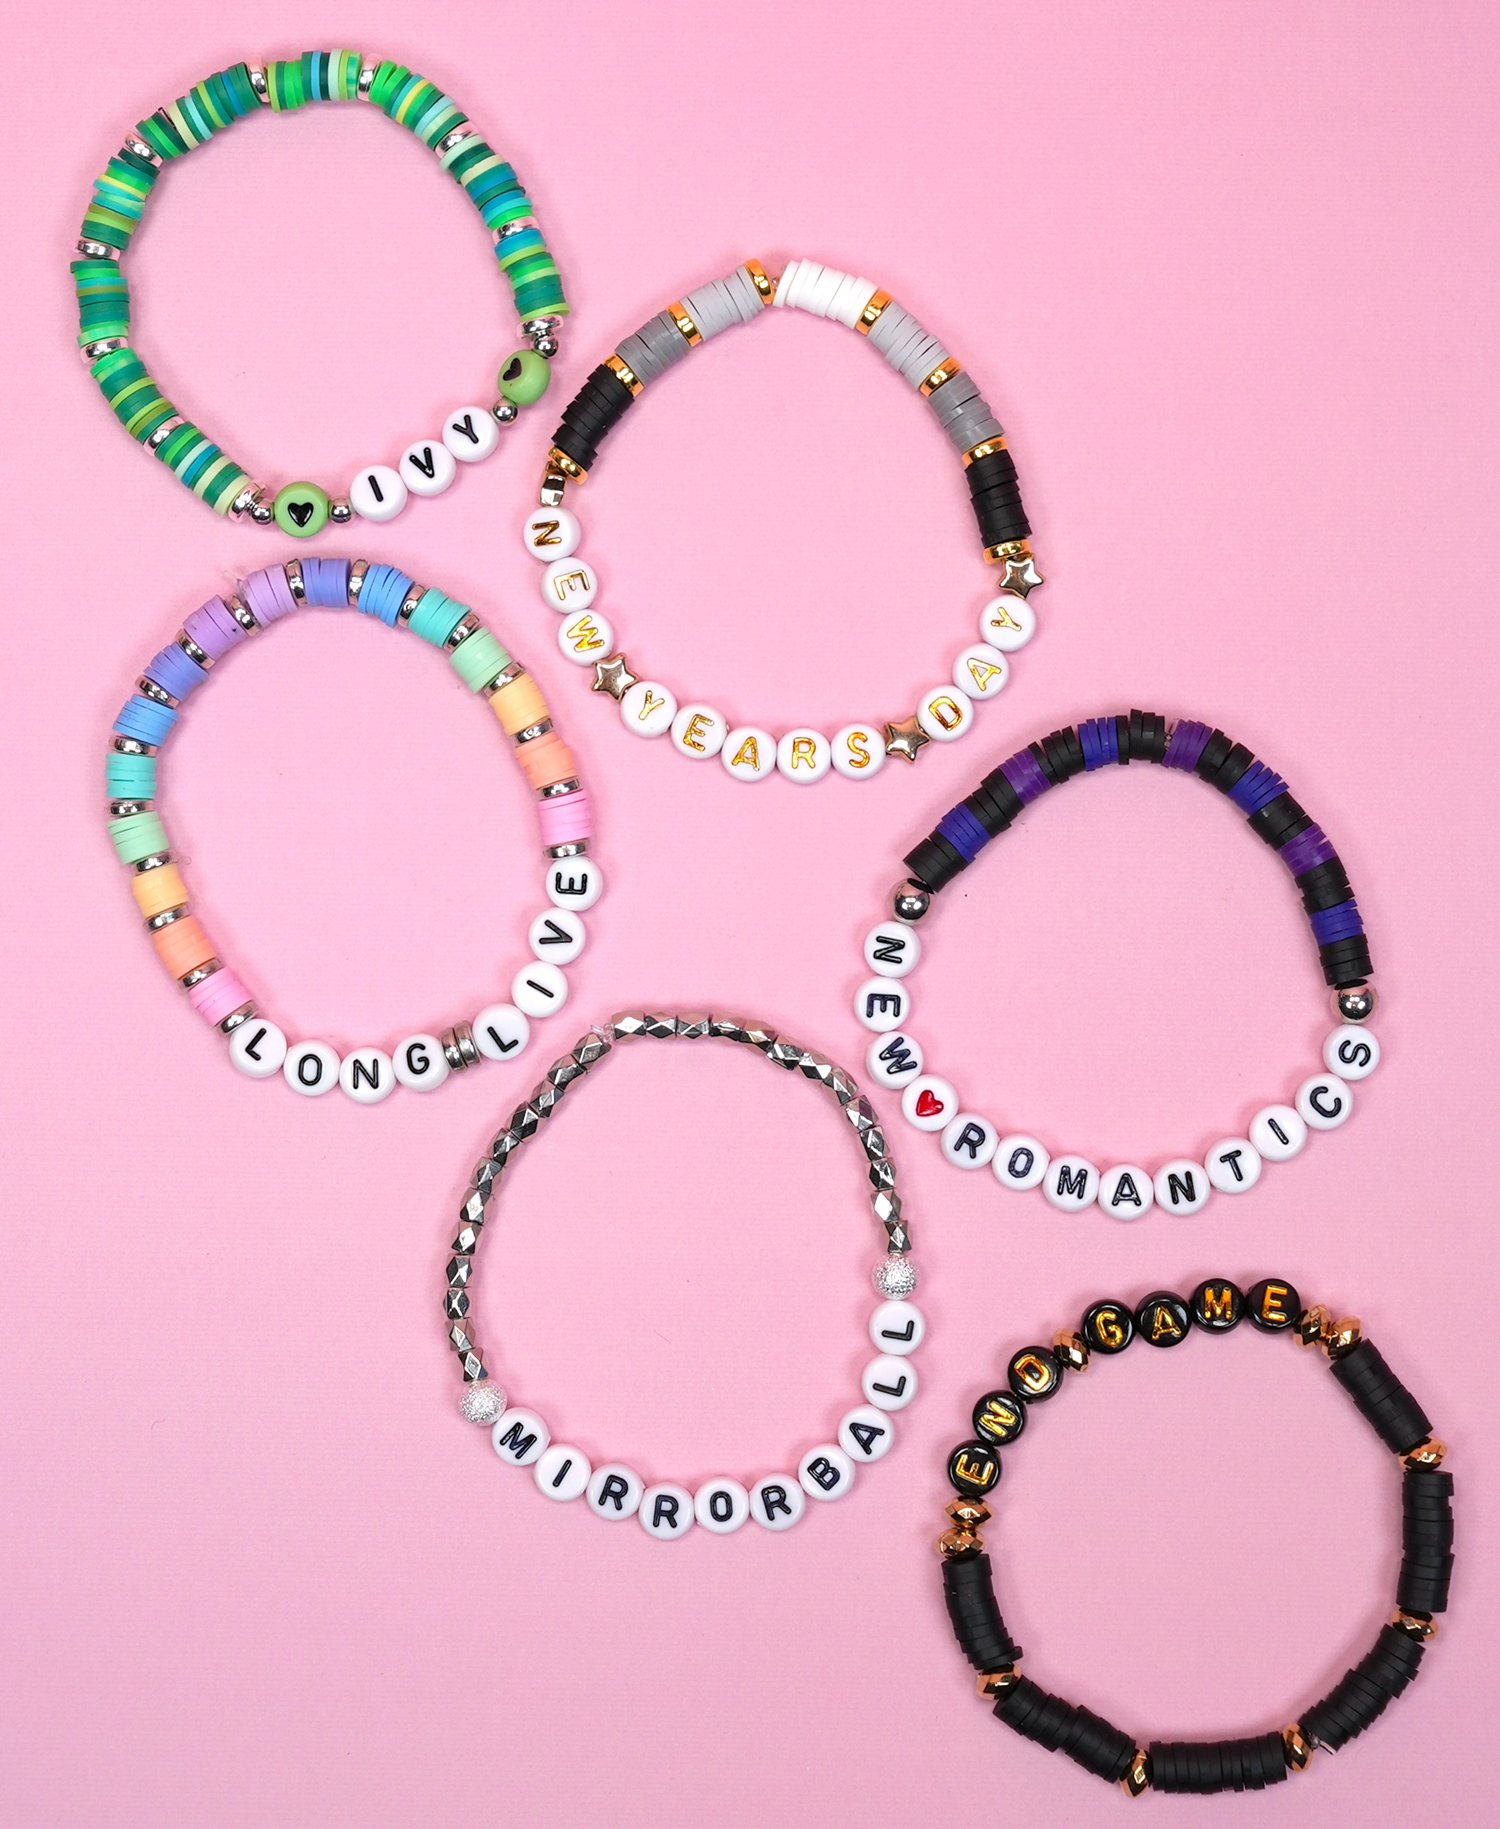 Taylor Swift Friendship Bracelets - Seed Bead Glass Colour Themed,  friendship bracelets taylor swift 